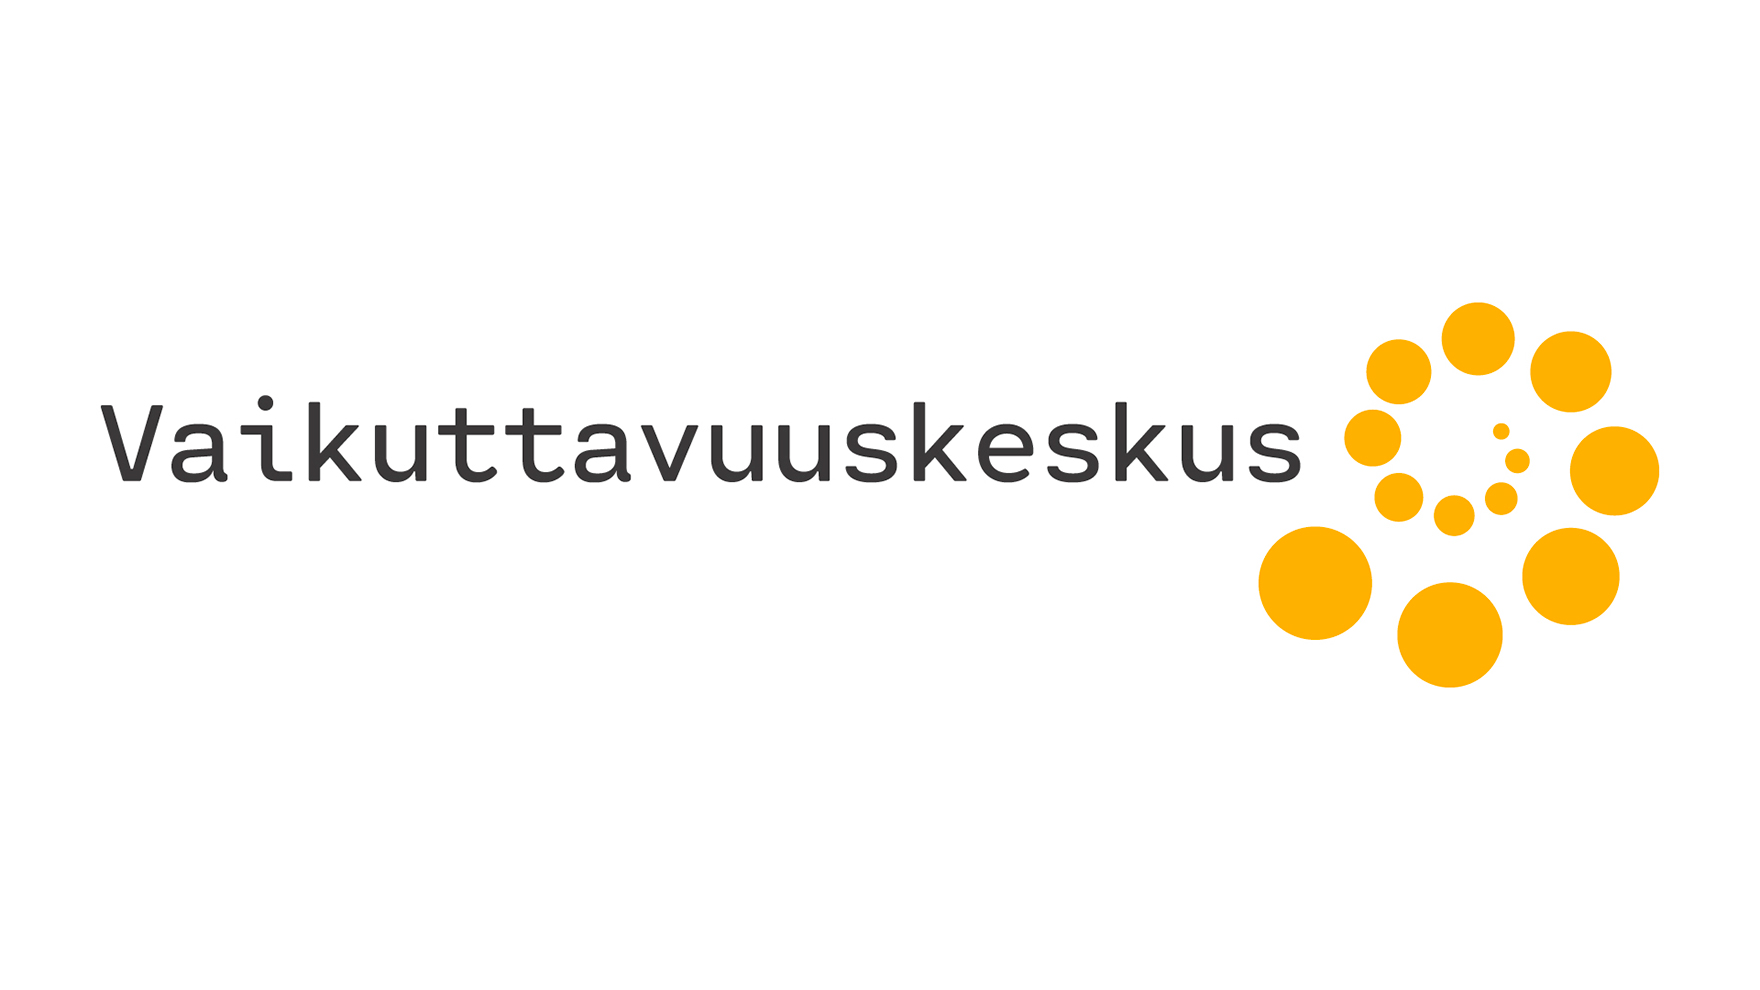 Vaikuttavuuskeskuksen logo.